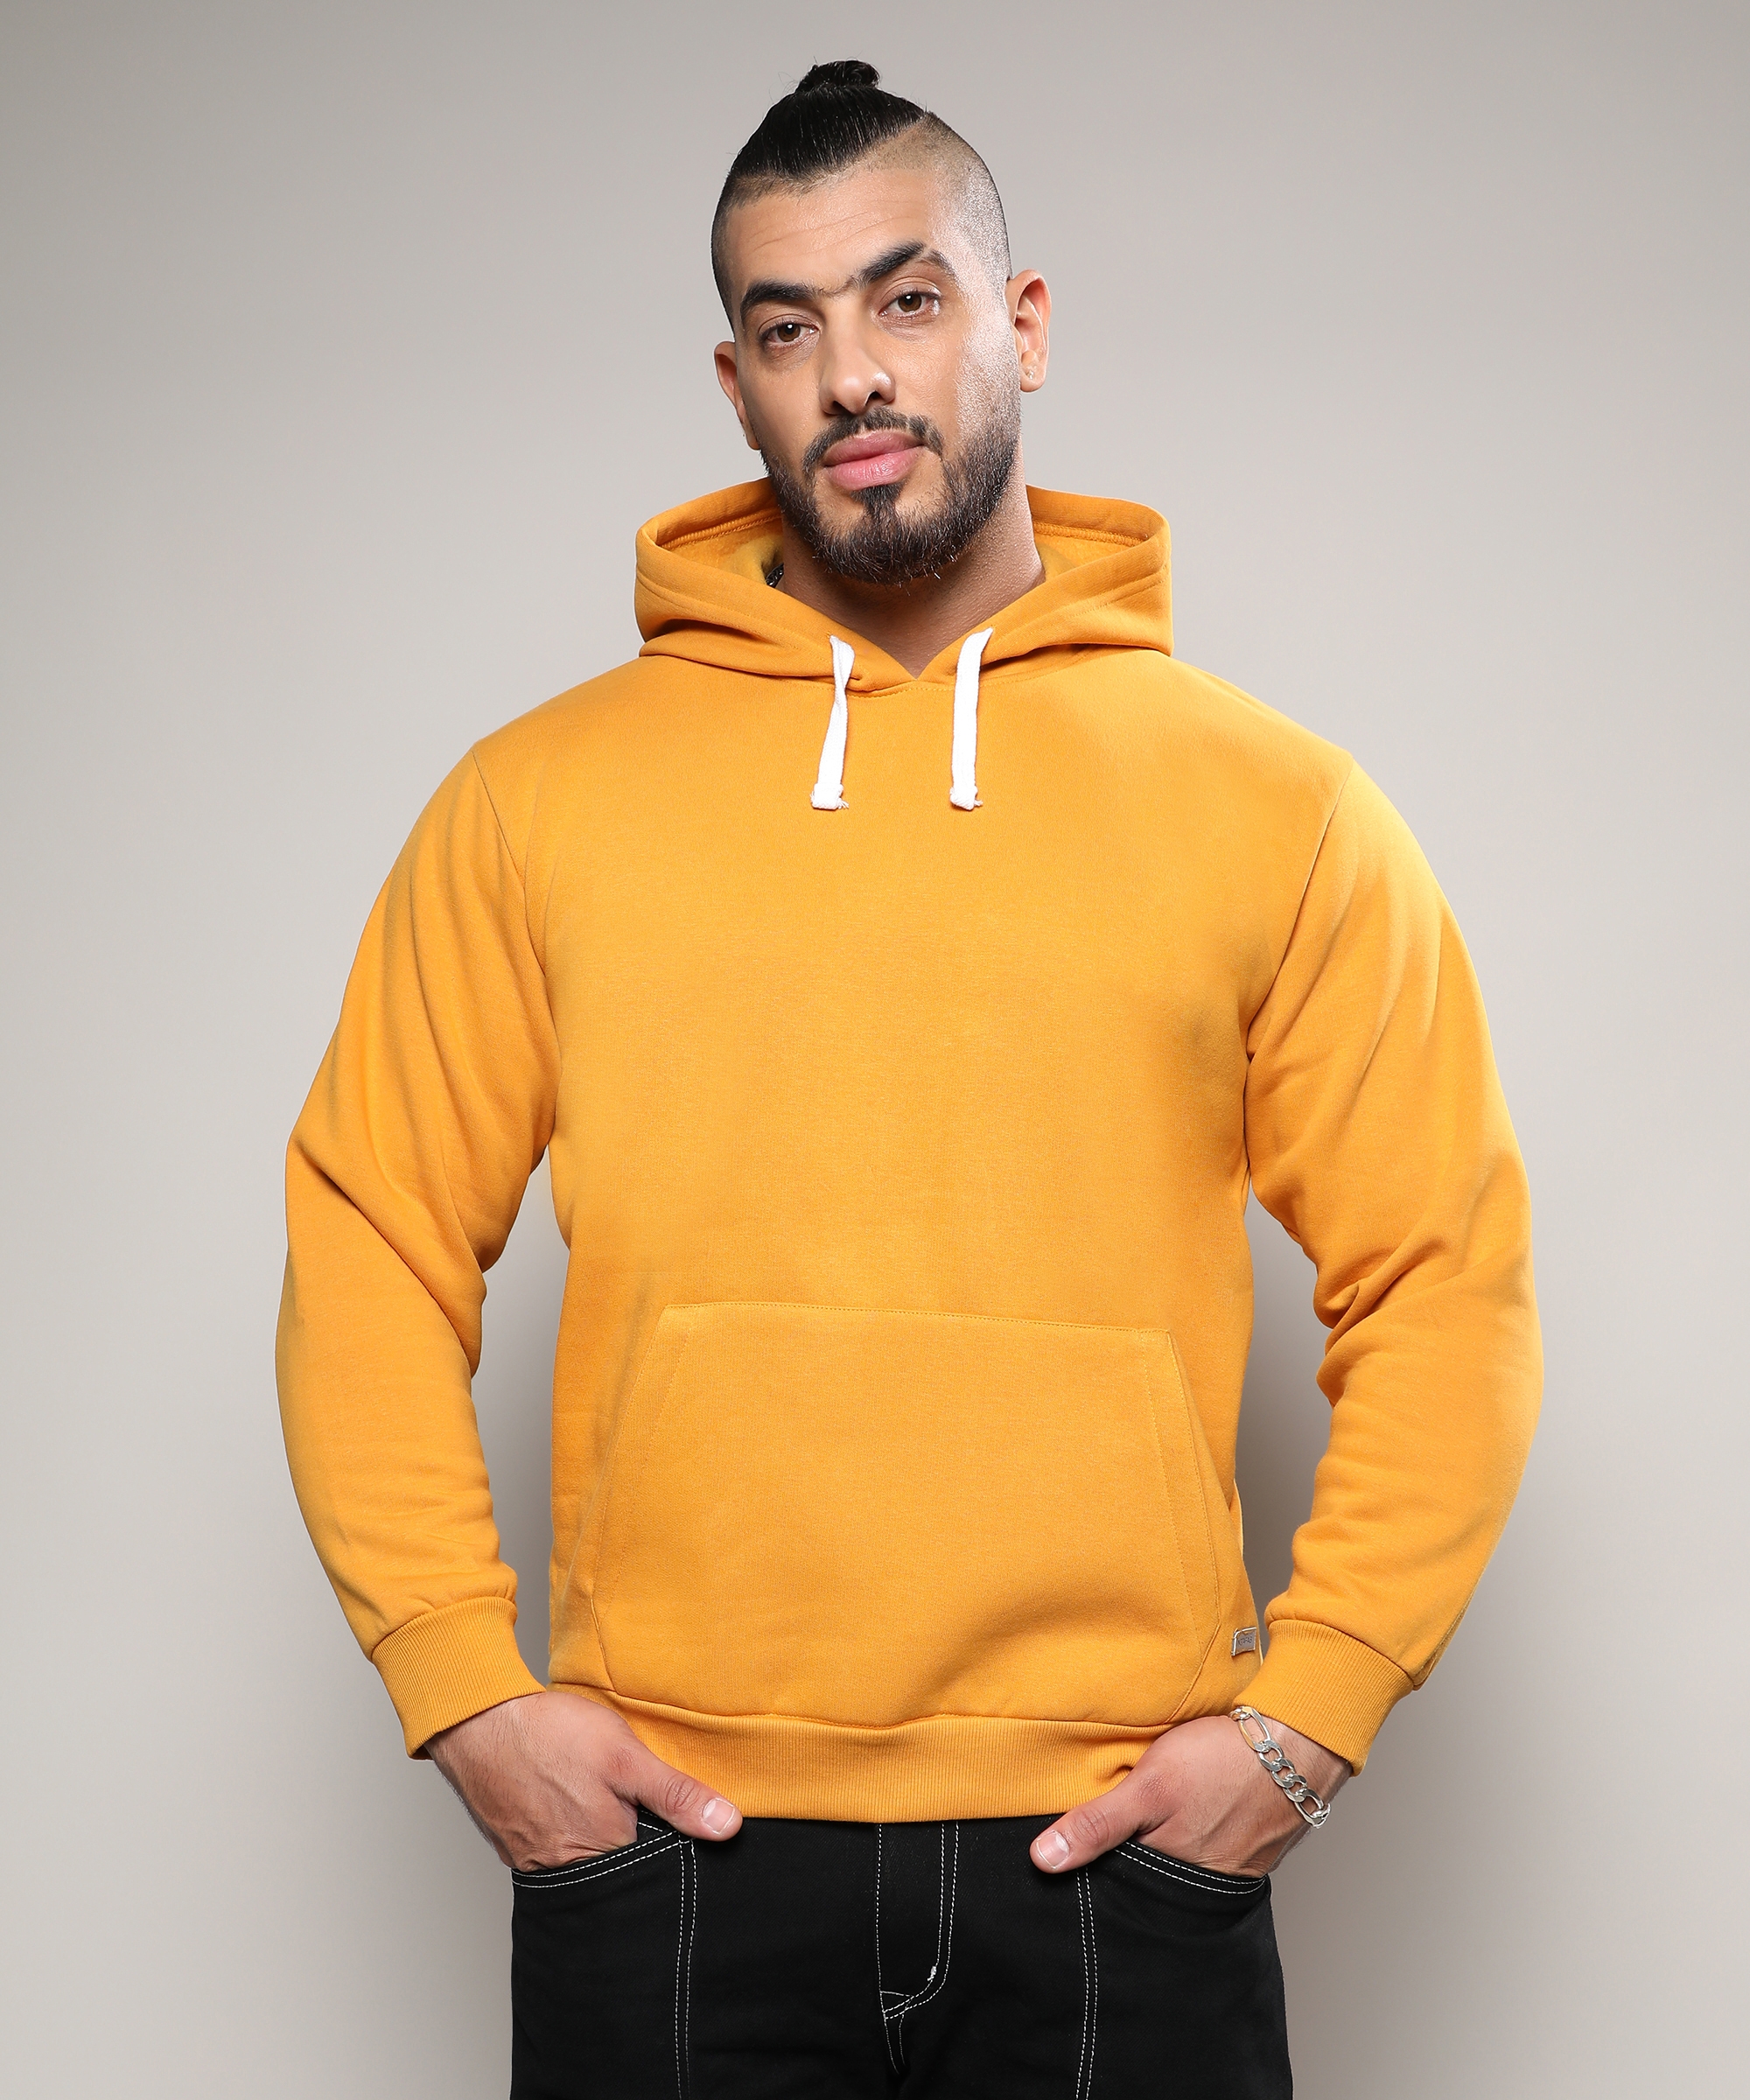 Men's Mustard Yellow Basic Hoodie With Kangaroo Pocket